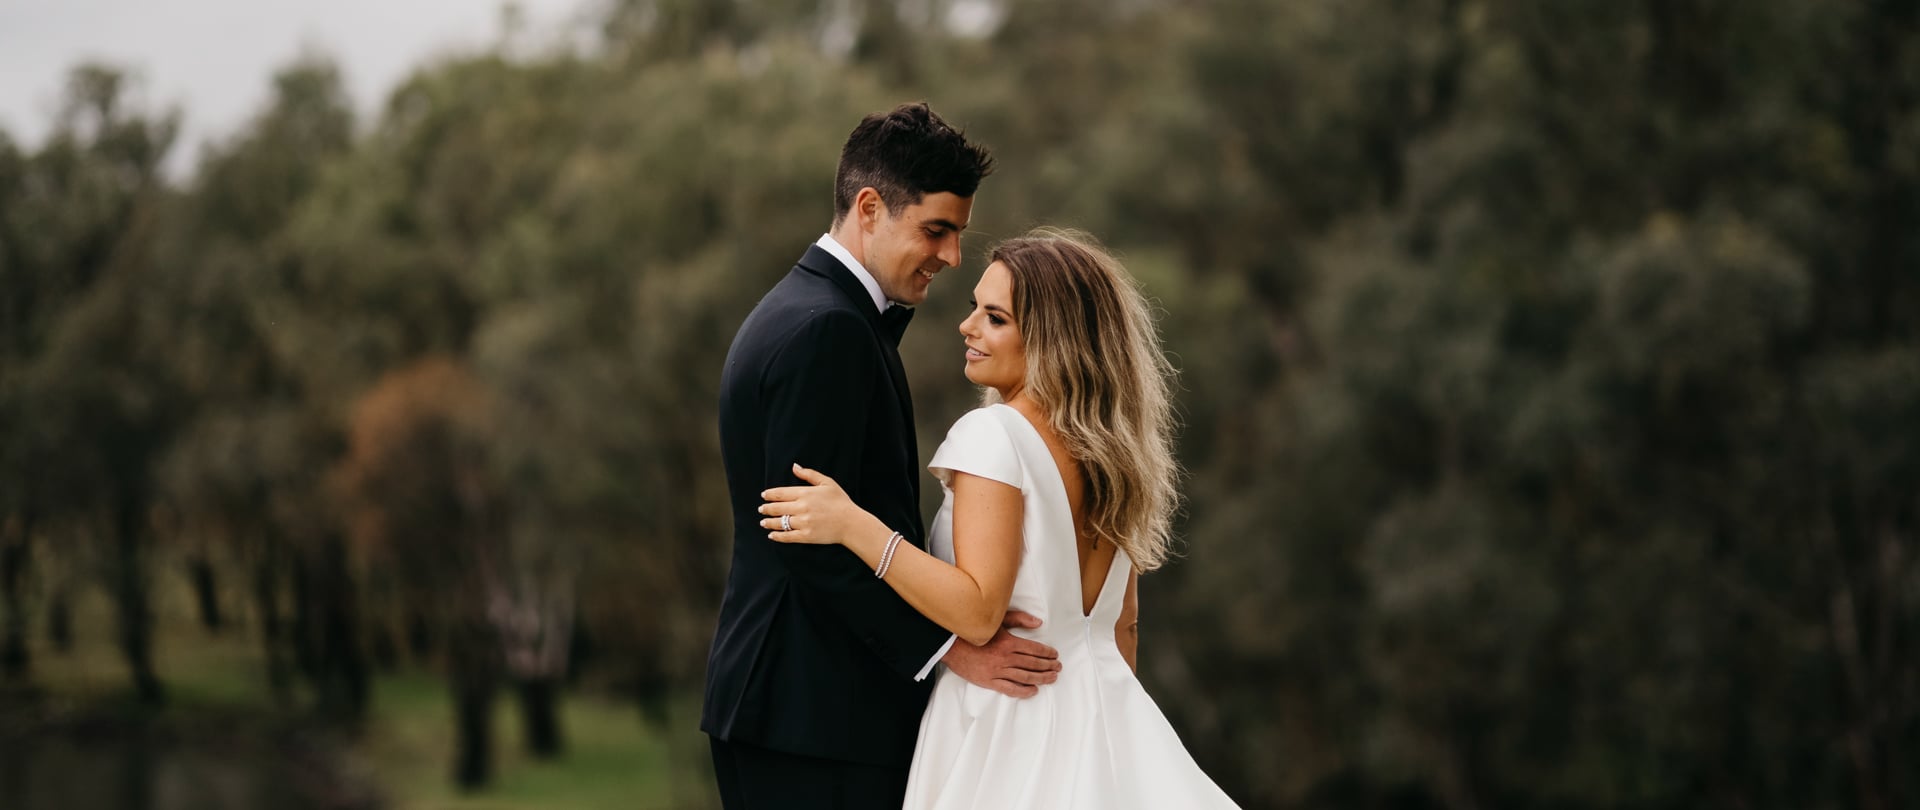 Isabella & Will Wedding Video Filmed at Victoria, Australia